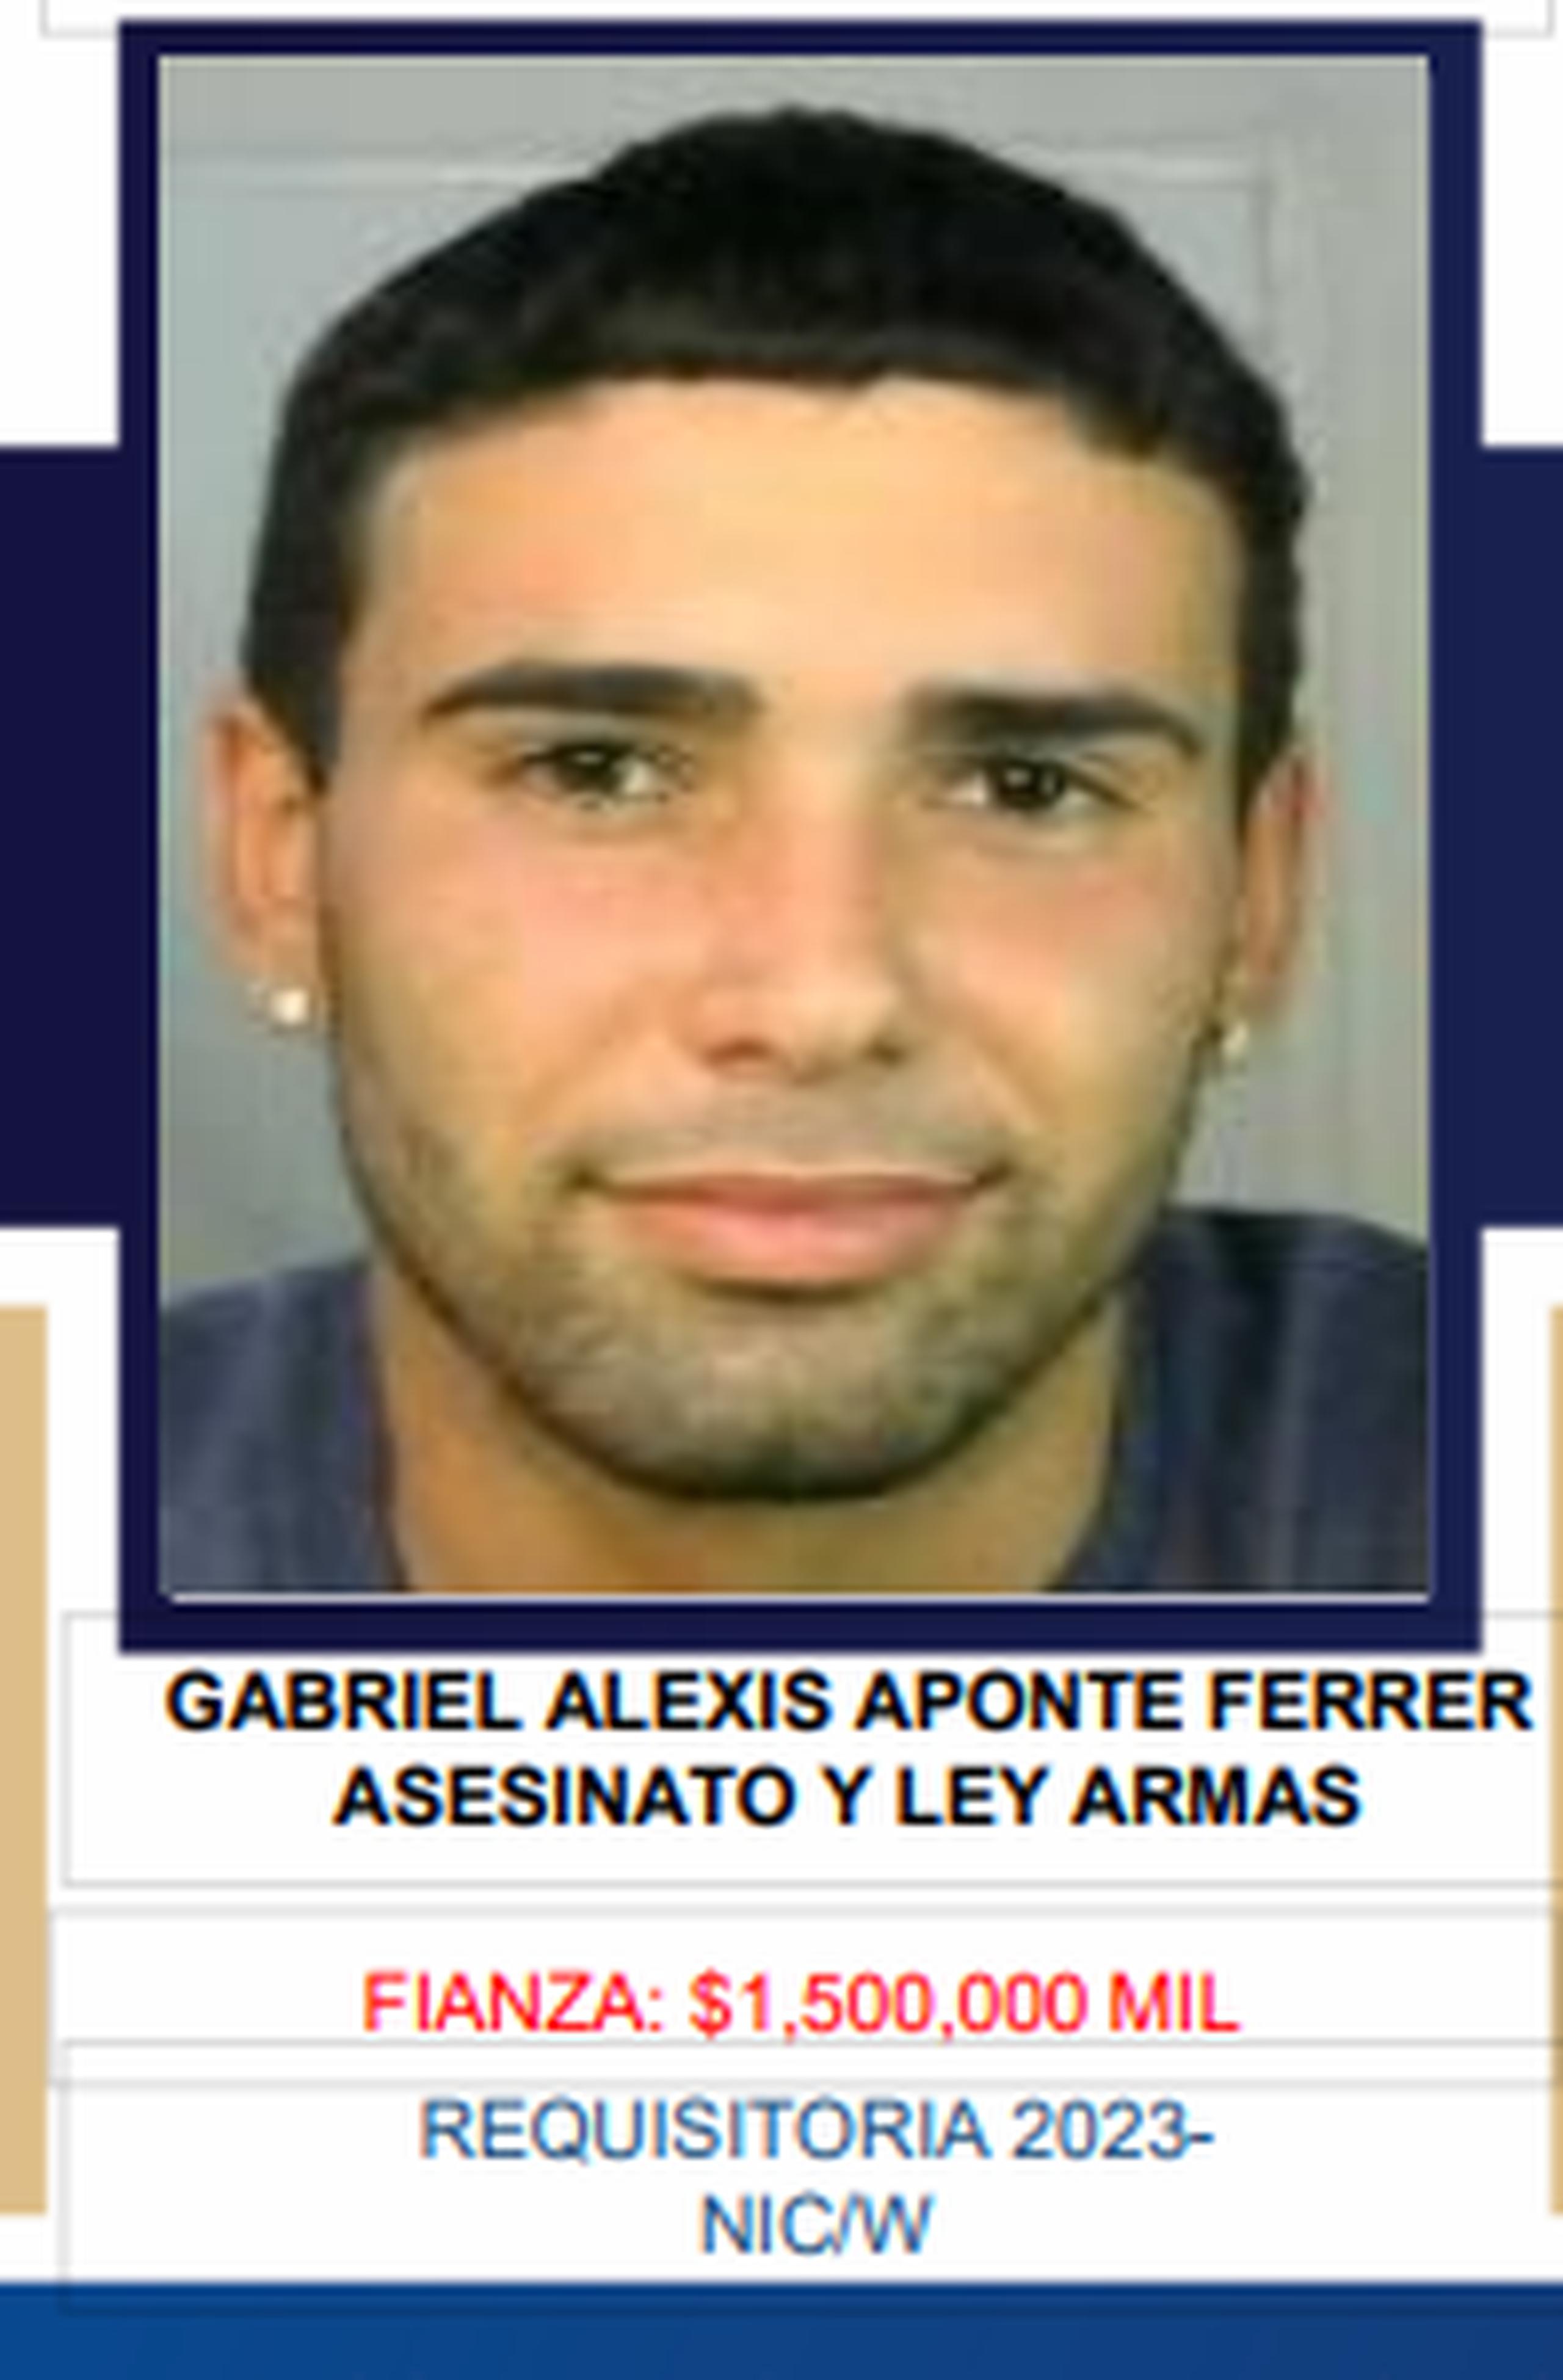 Gabriel Alexis Aponte Ferrer es sospechoso de asesinar a Jan Carlos Vázquez Flores, quien era hijo de un policía, el 25 de septiembre de 2023 en Cabo Rojo.